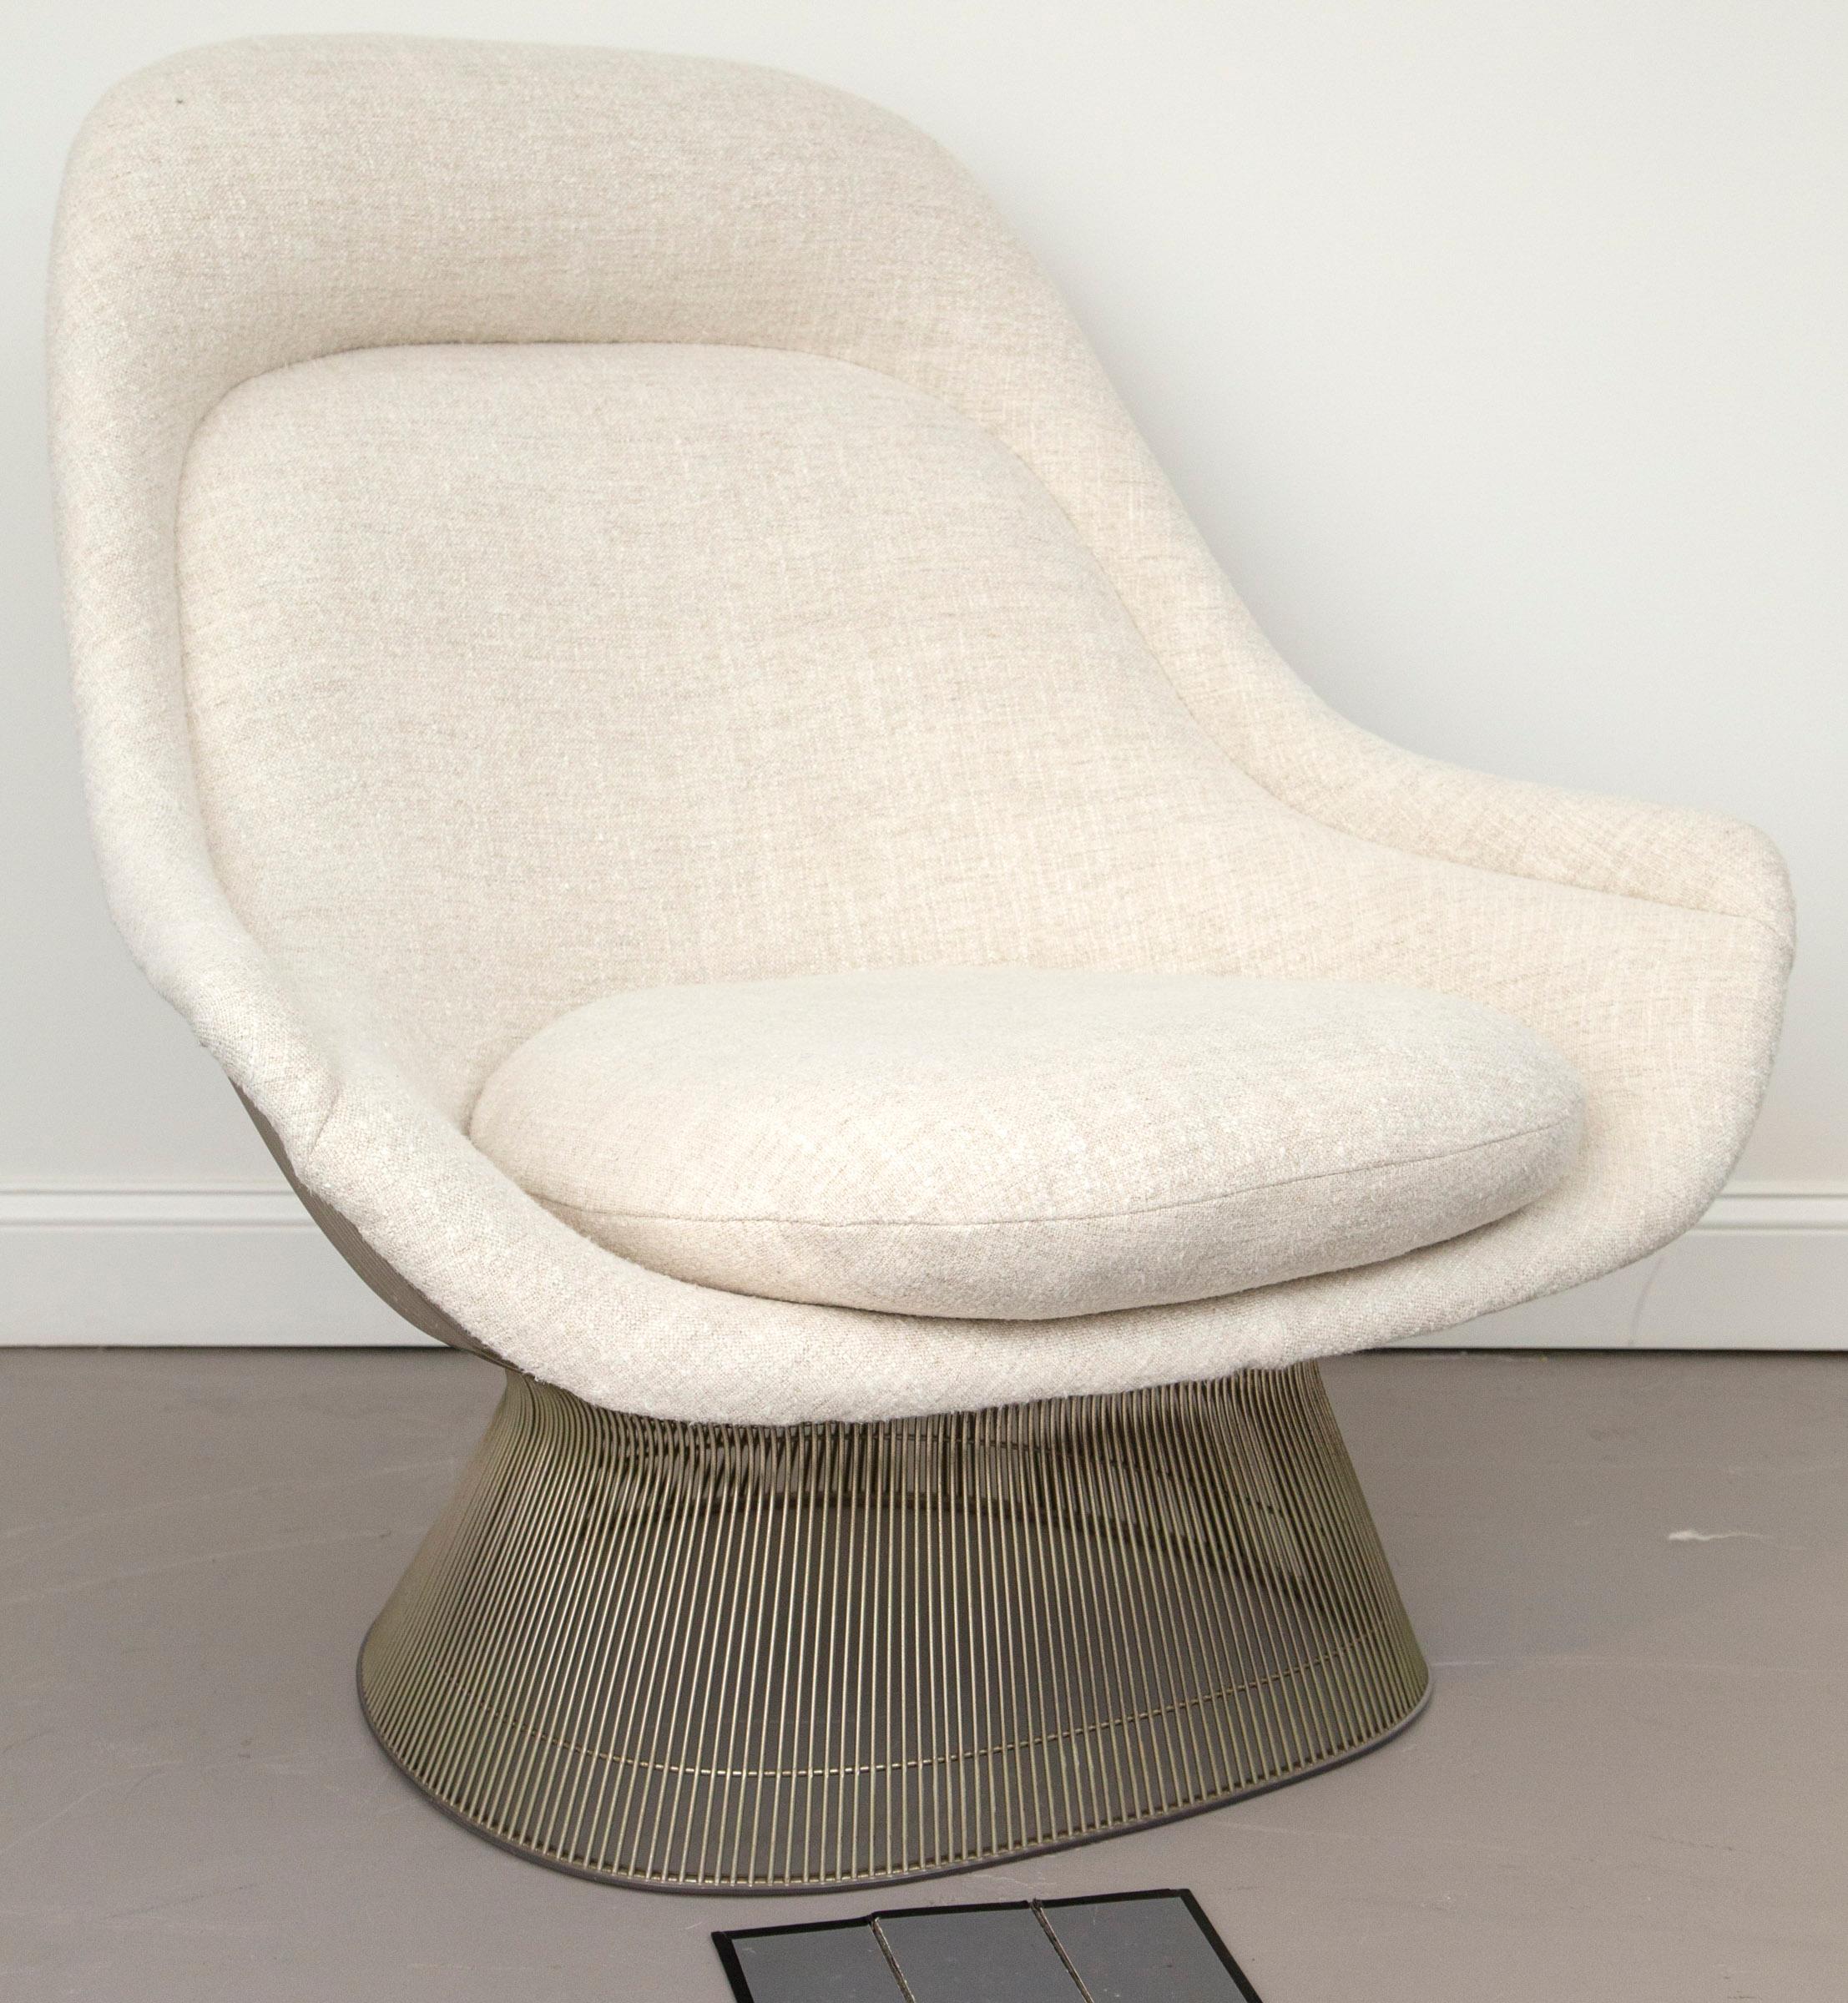 Schöner und ikonischer Warren Platner for Knoll Lounge Chair mit hoher Rückenlehne in Nickeloptik, bezogen mit einem neuen Maharam-Wollstoff. Das schlichte Design und die unglaubliche Liebe zum Detail machen diesen Stuhl nicht nur attraktiv, sondern